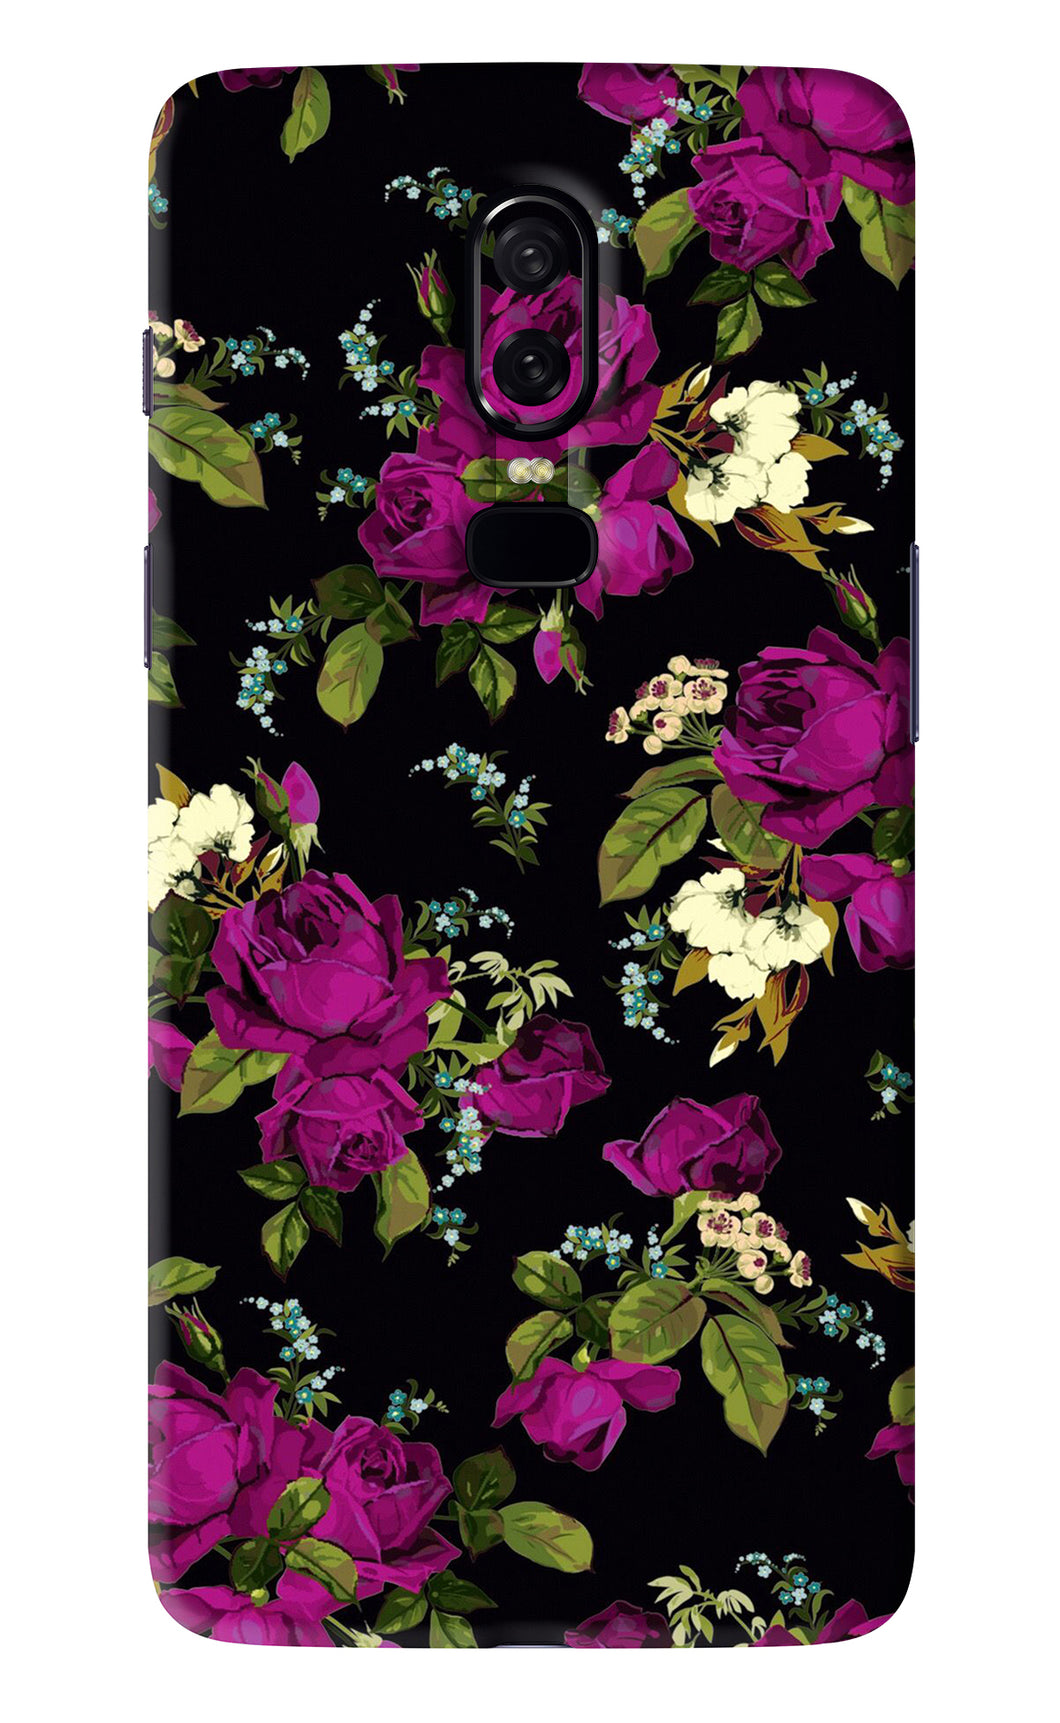 Flowers 3 OnePlus 6 Back Skin Wrap